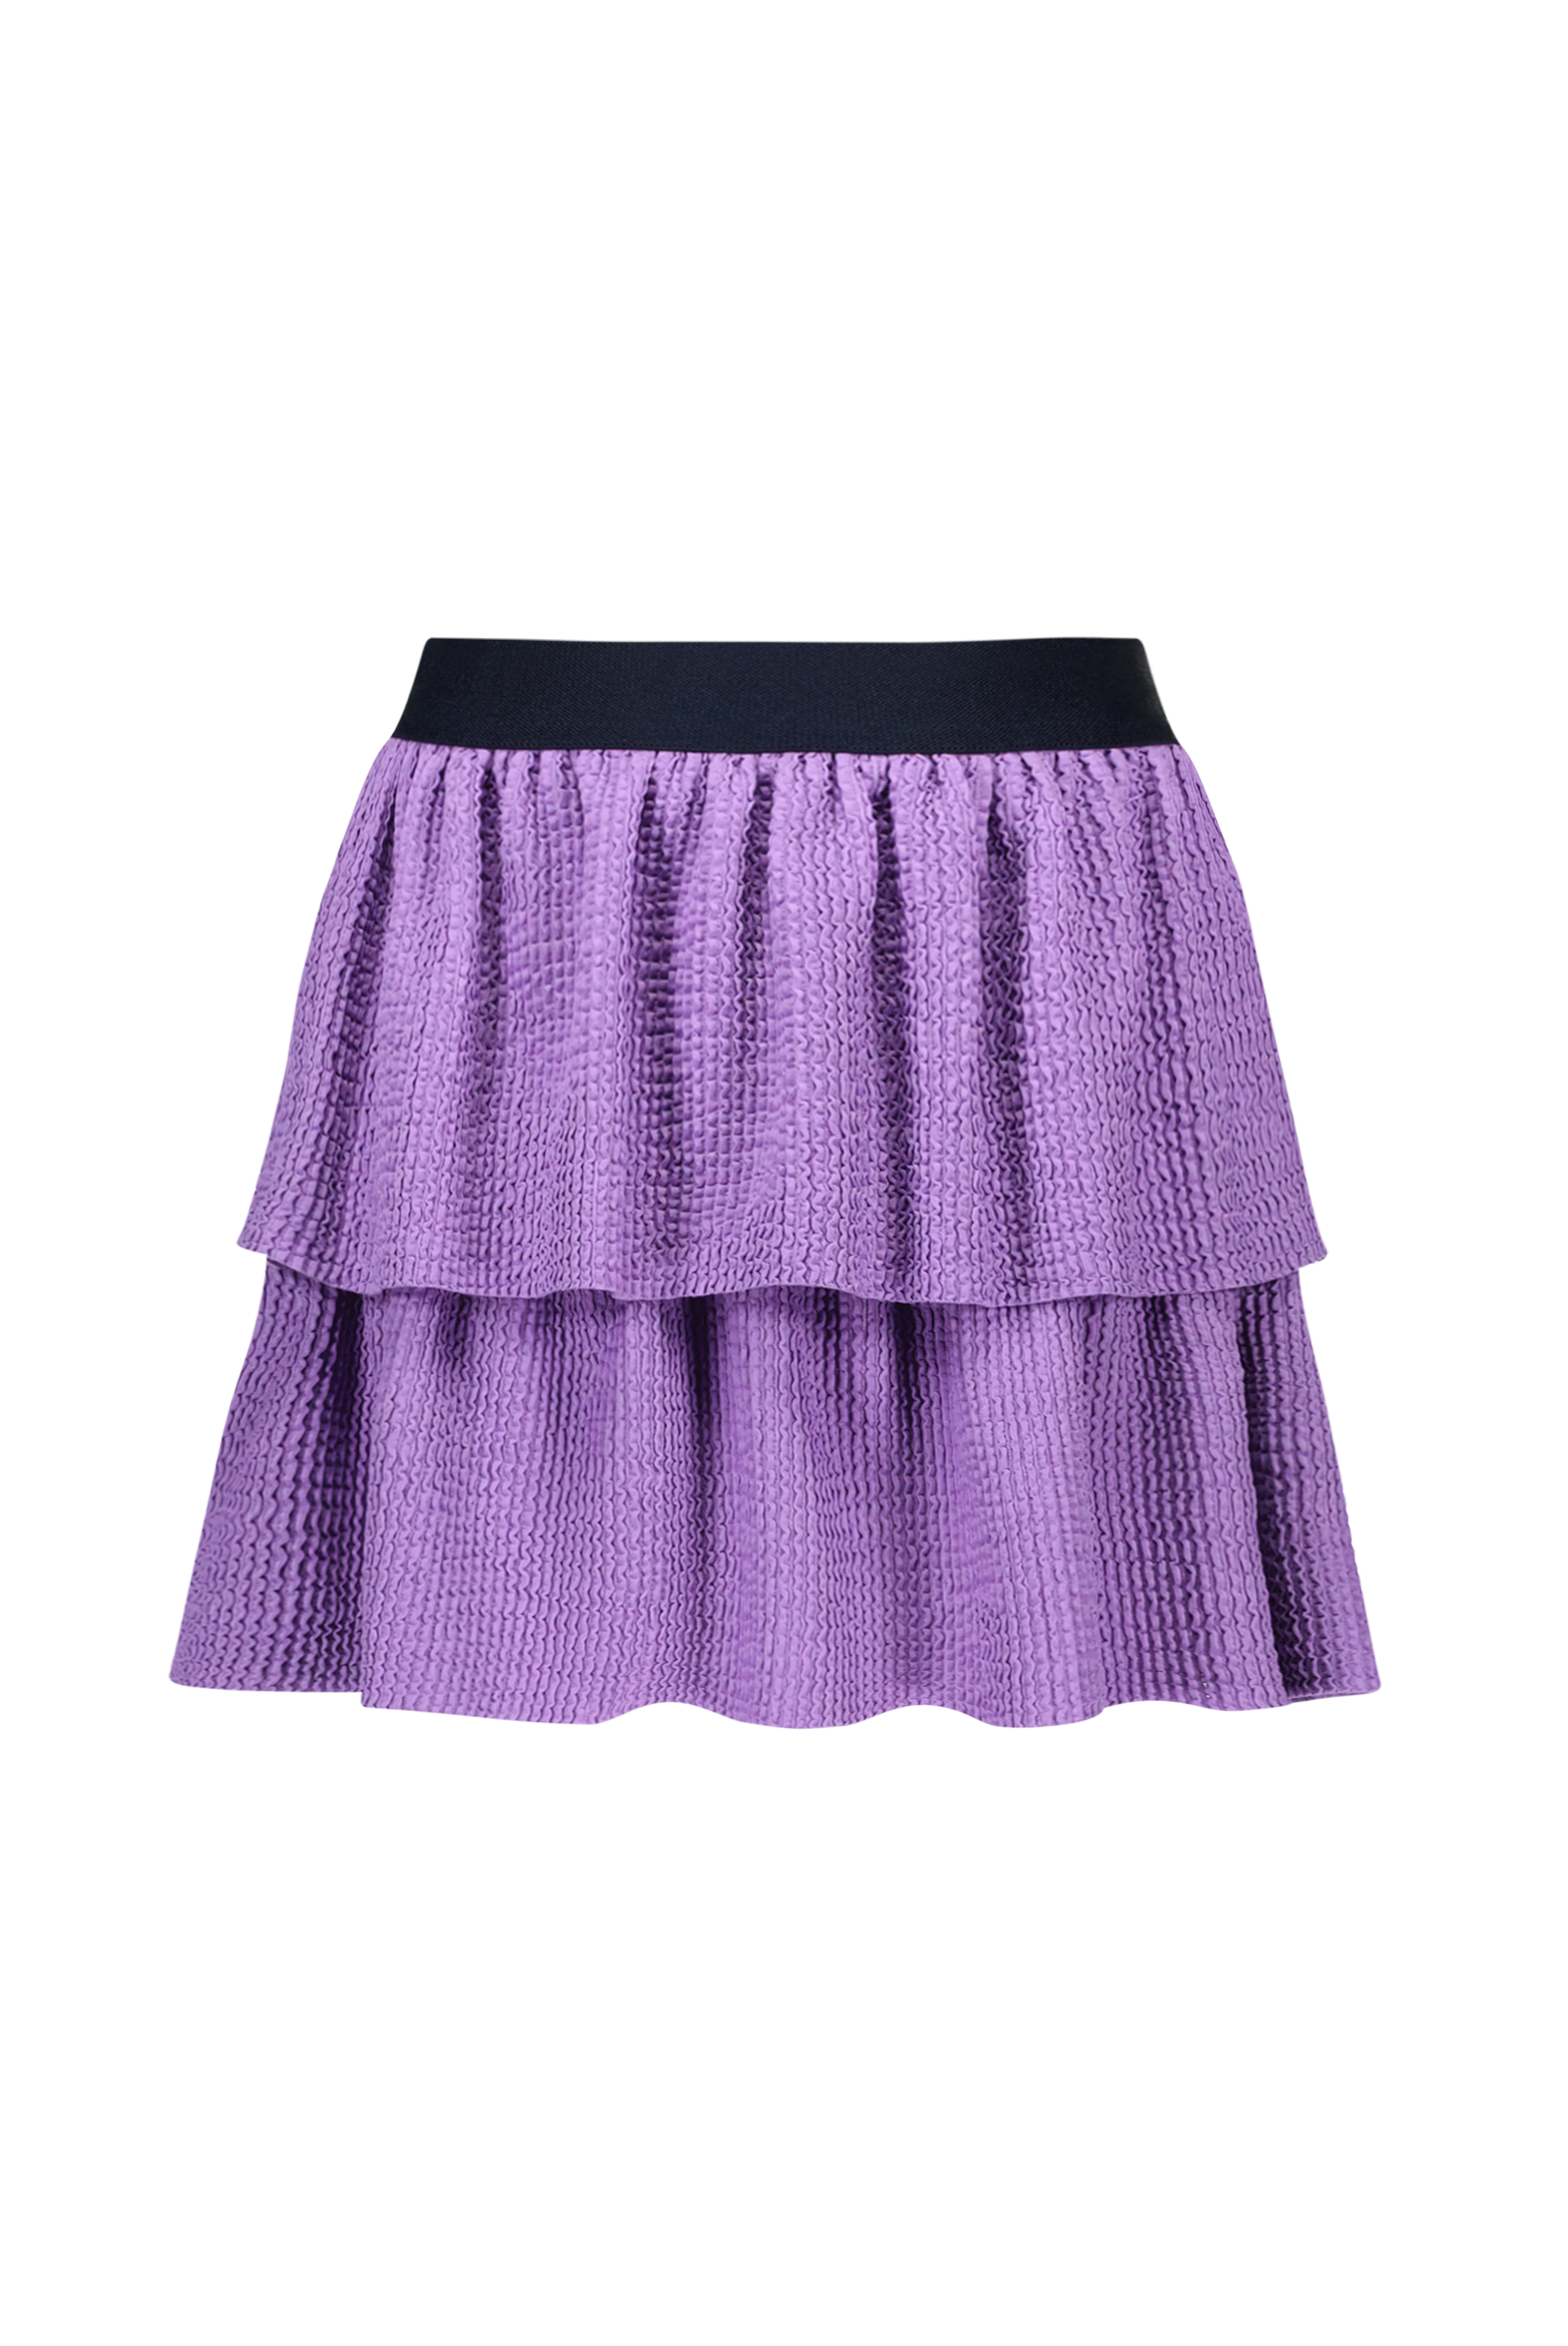 Rok Girls 2 layer skirt w/ jersey fabric